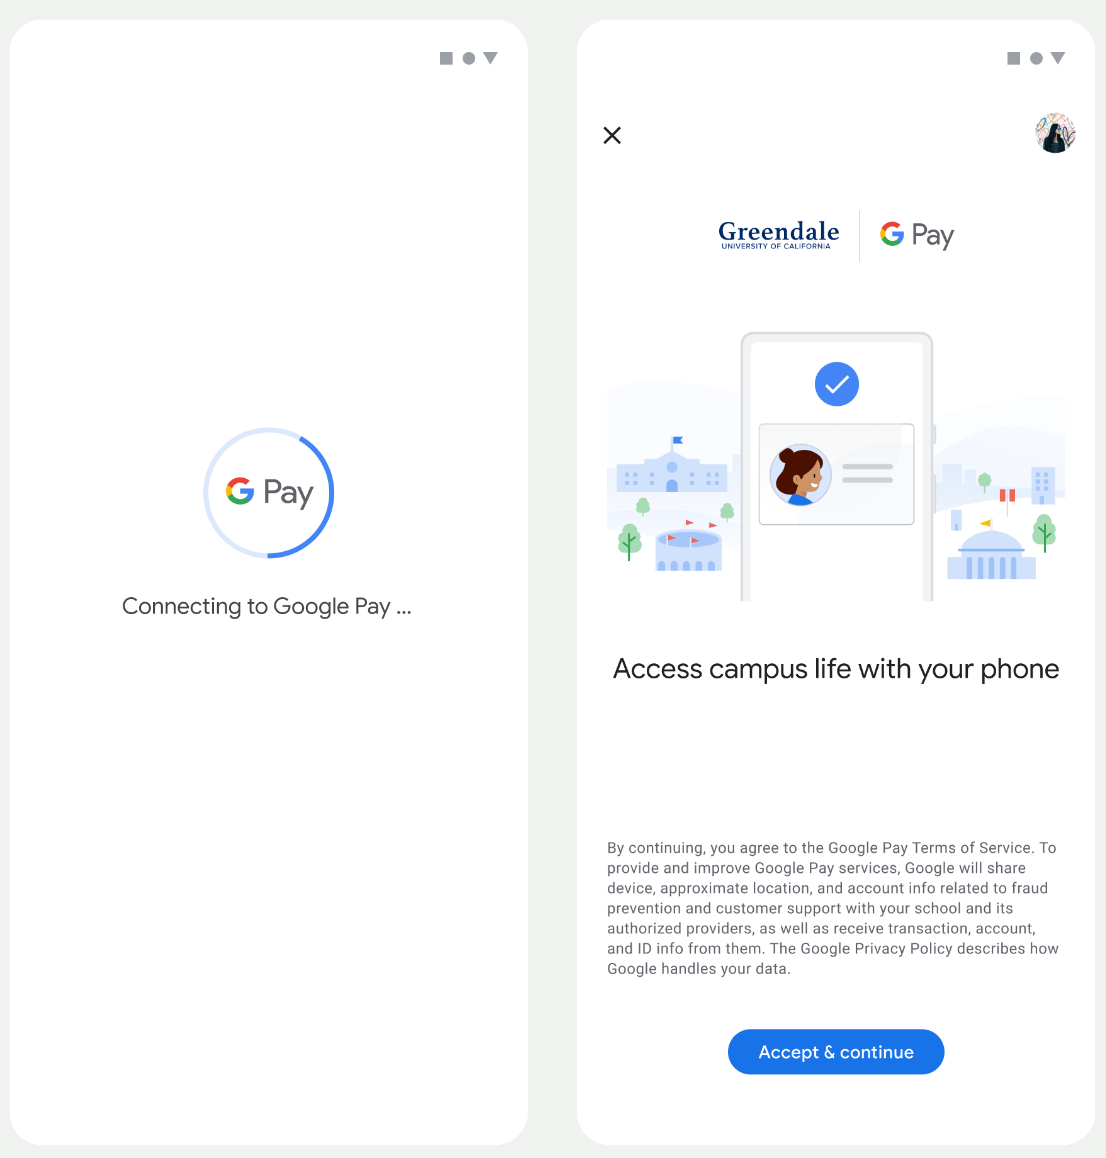 Na pierwszym ekranie aplikacja połączy się z Portfelem Google. Na drugim ekranie użytkownik akceptuje Warunki korzystania z usługi i kontynuuje przeglądanie.